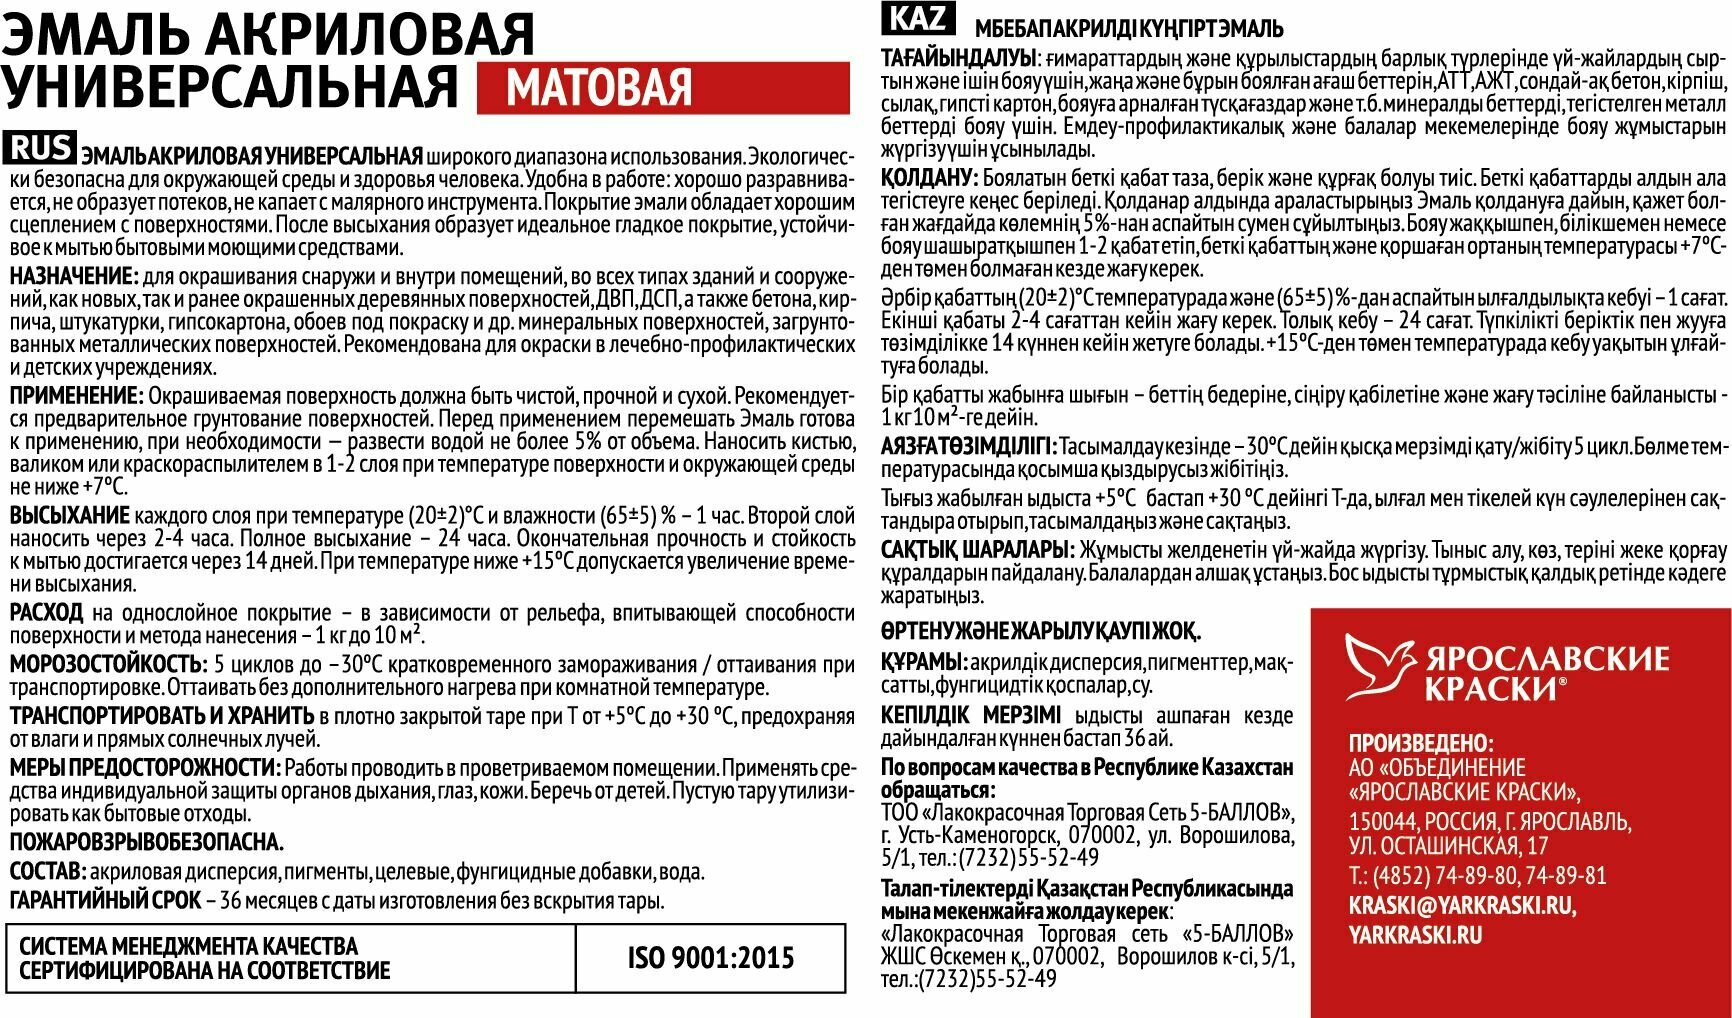 Эмаль ярославские краски универсальная акриловая бежевая матовая, ведро 0,9 кг